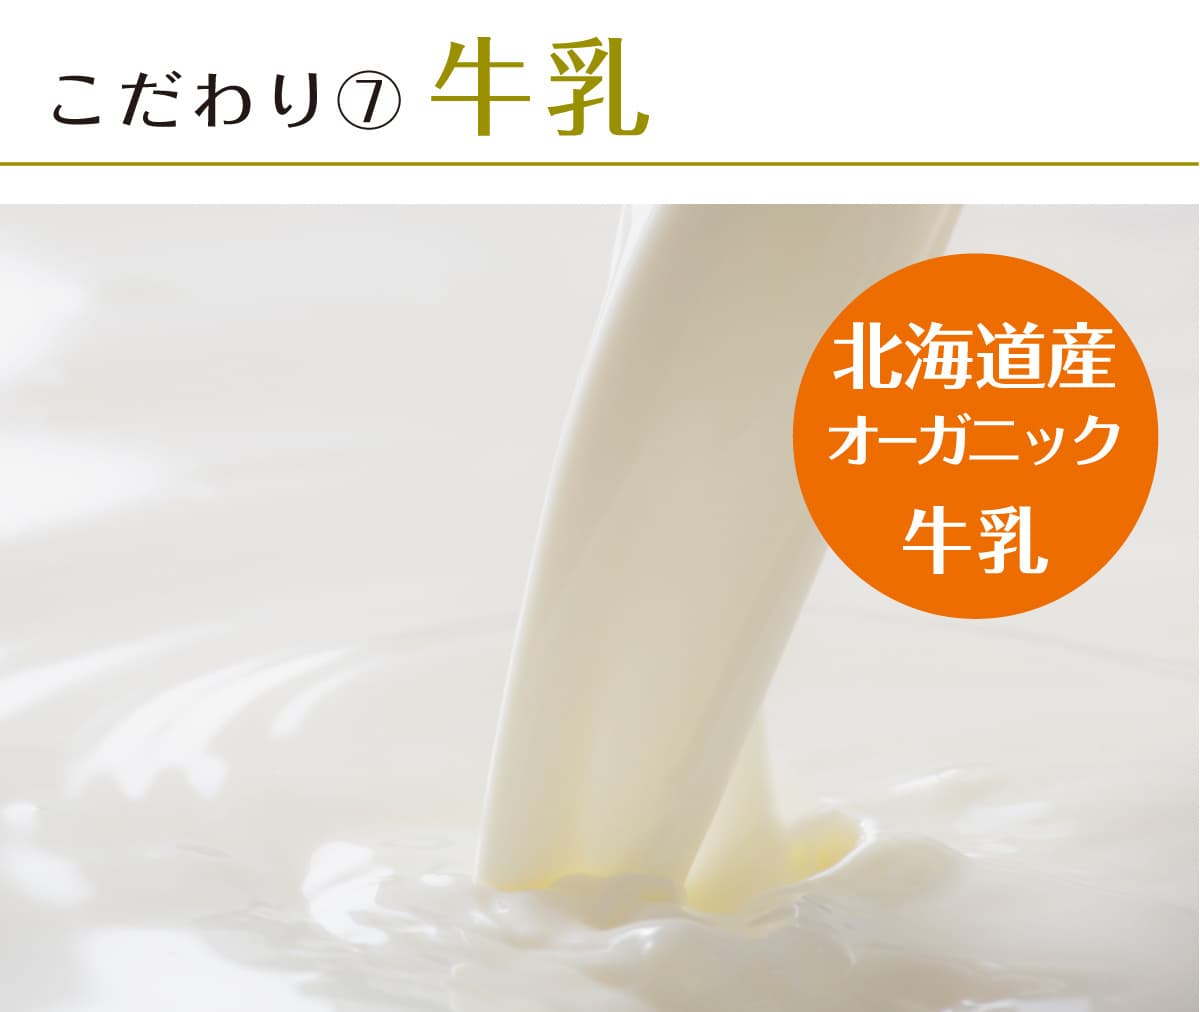 伊ロールの北海道産オーガニック牛乳